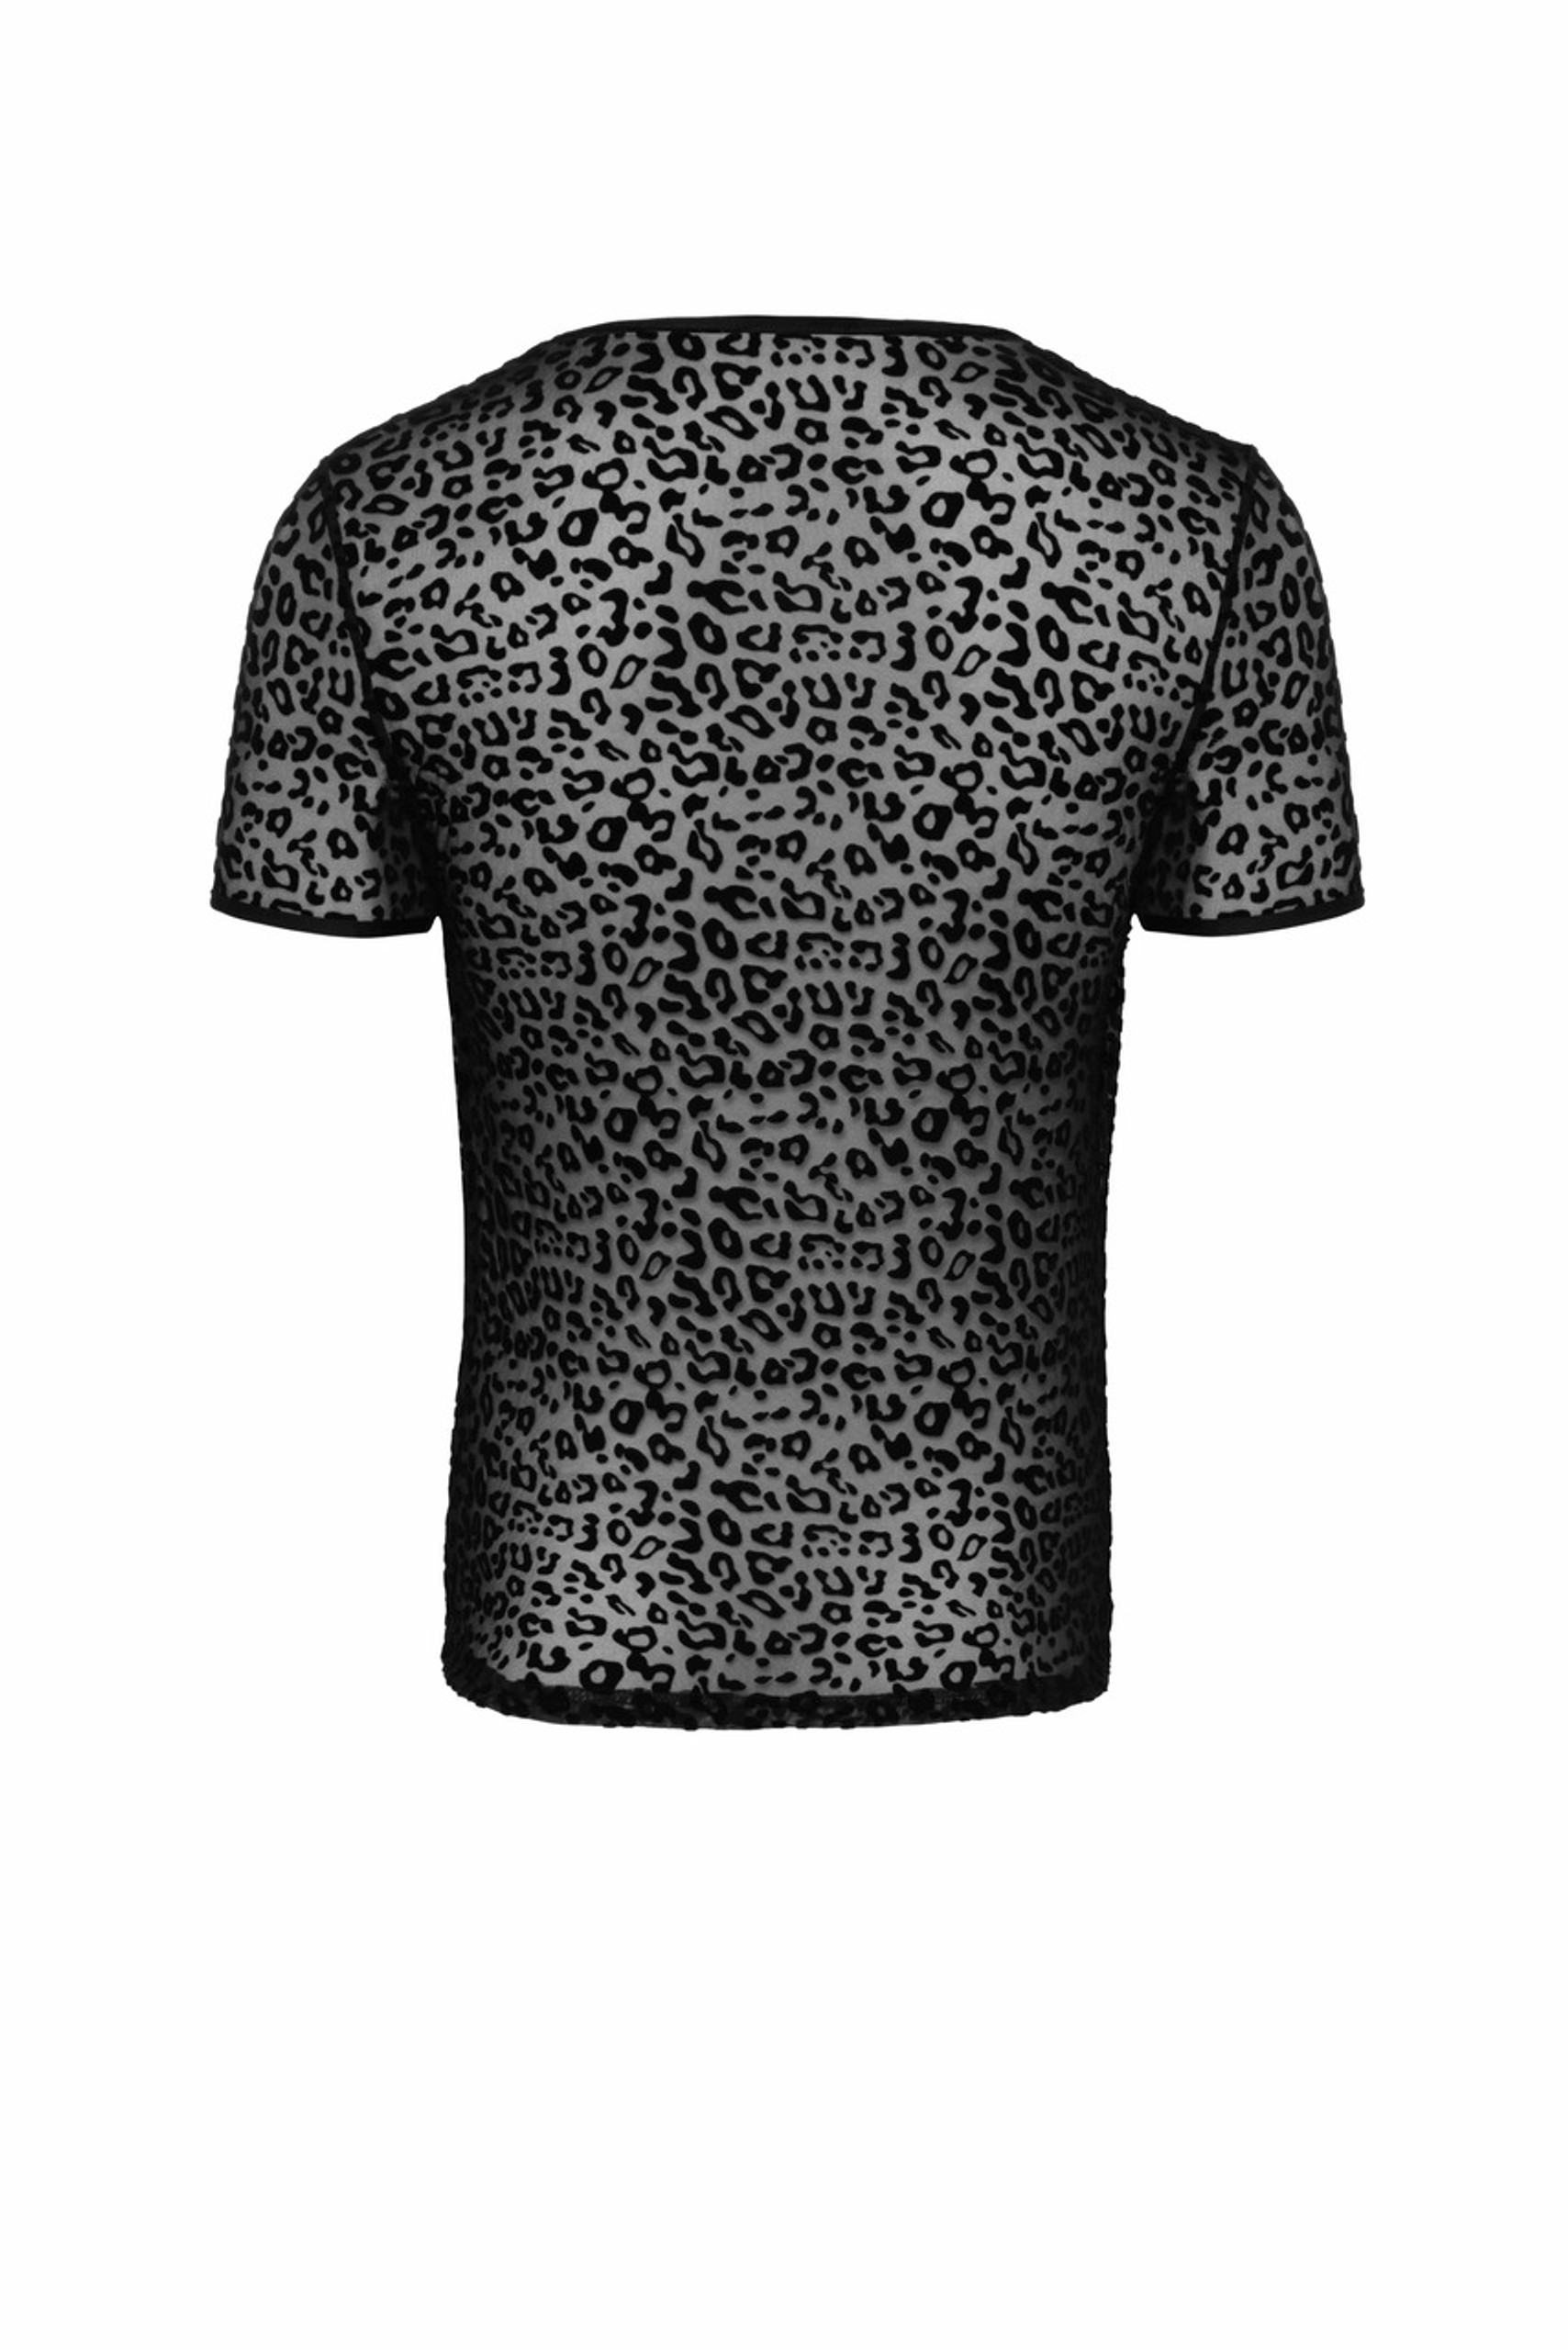 Noir Handmade H071 Leopardenflock T-Shirt mit V-Ausschnitt